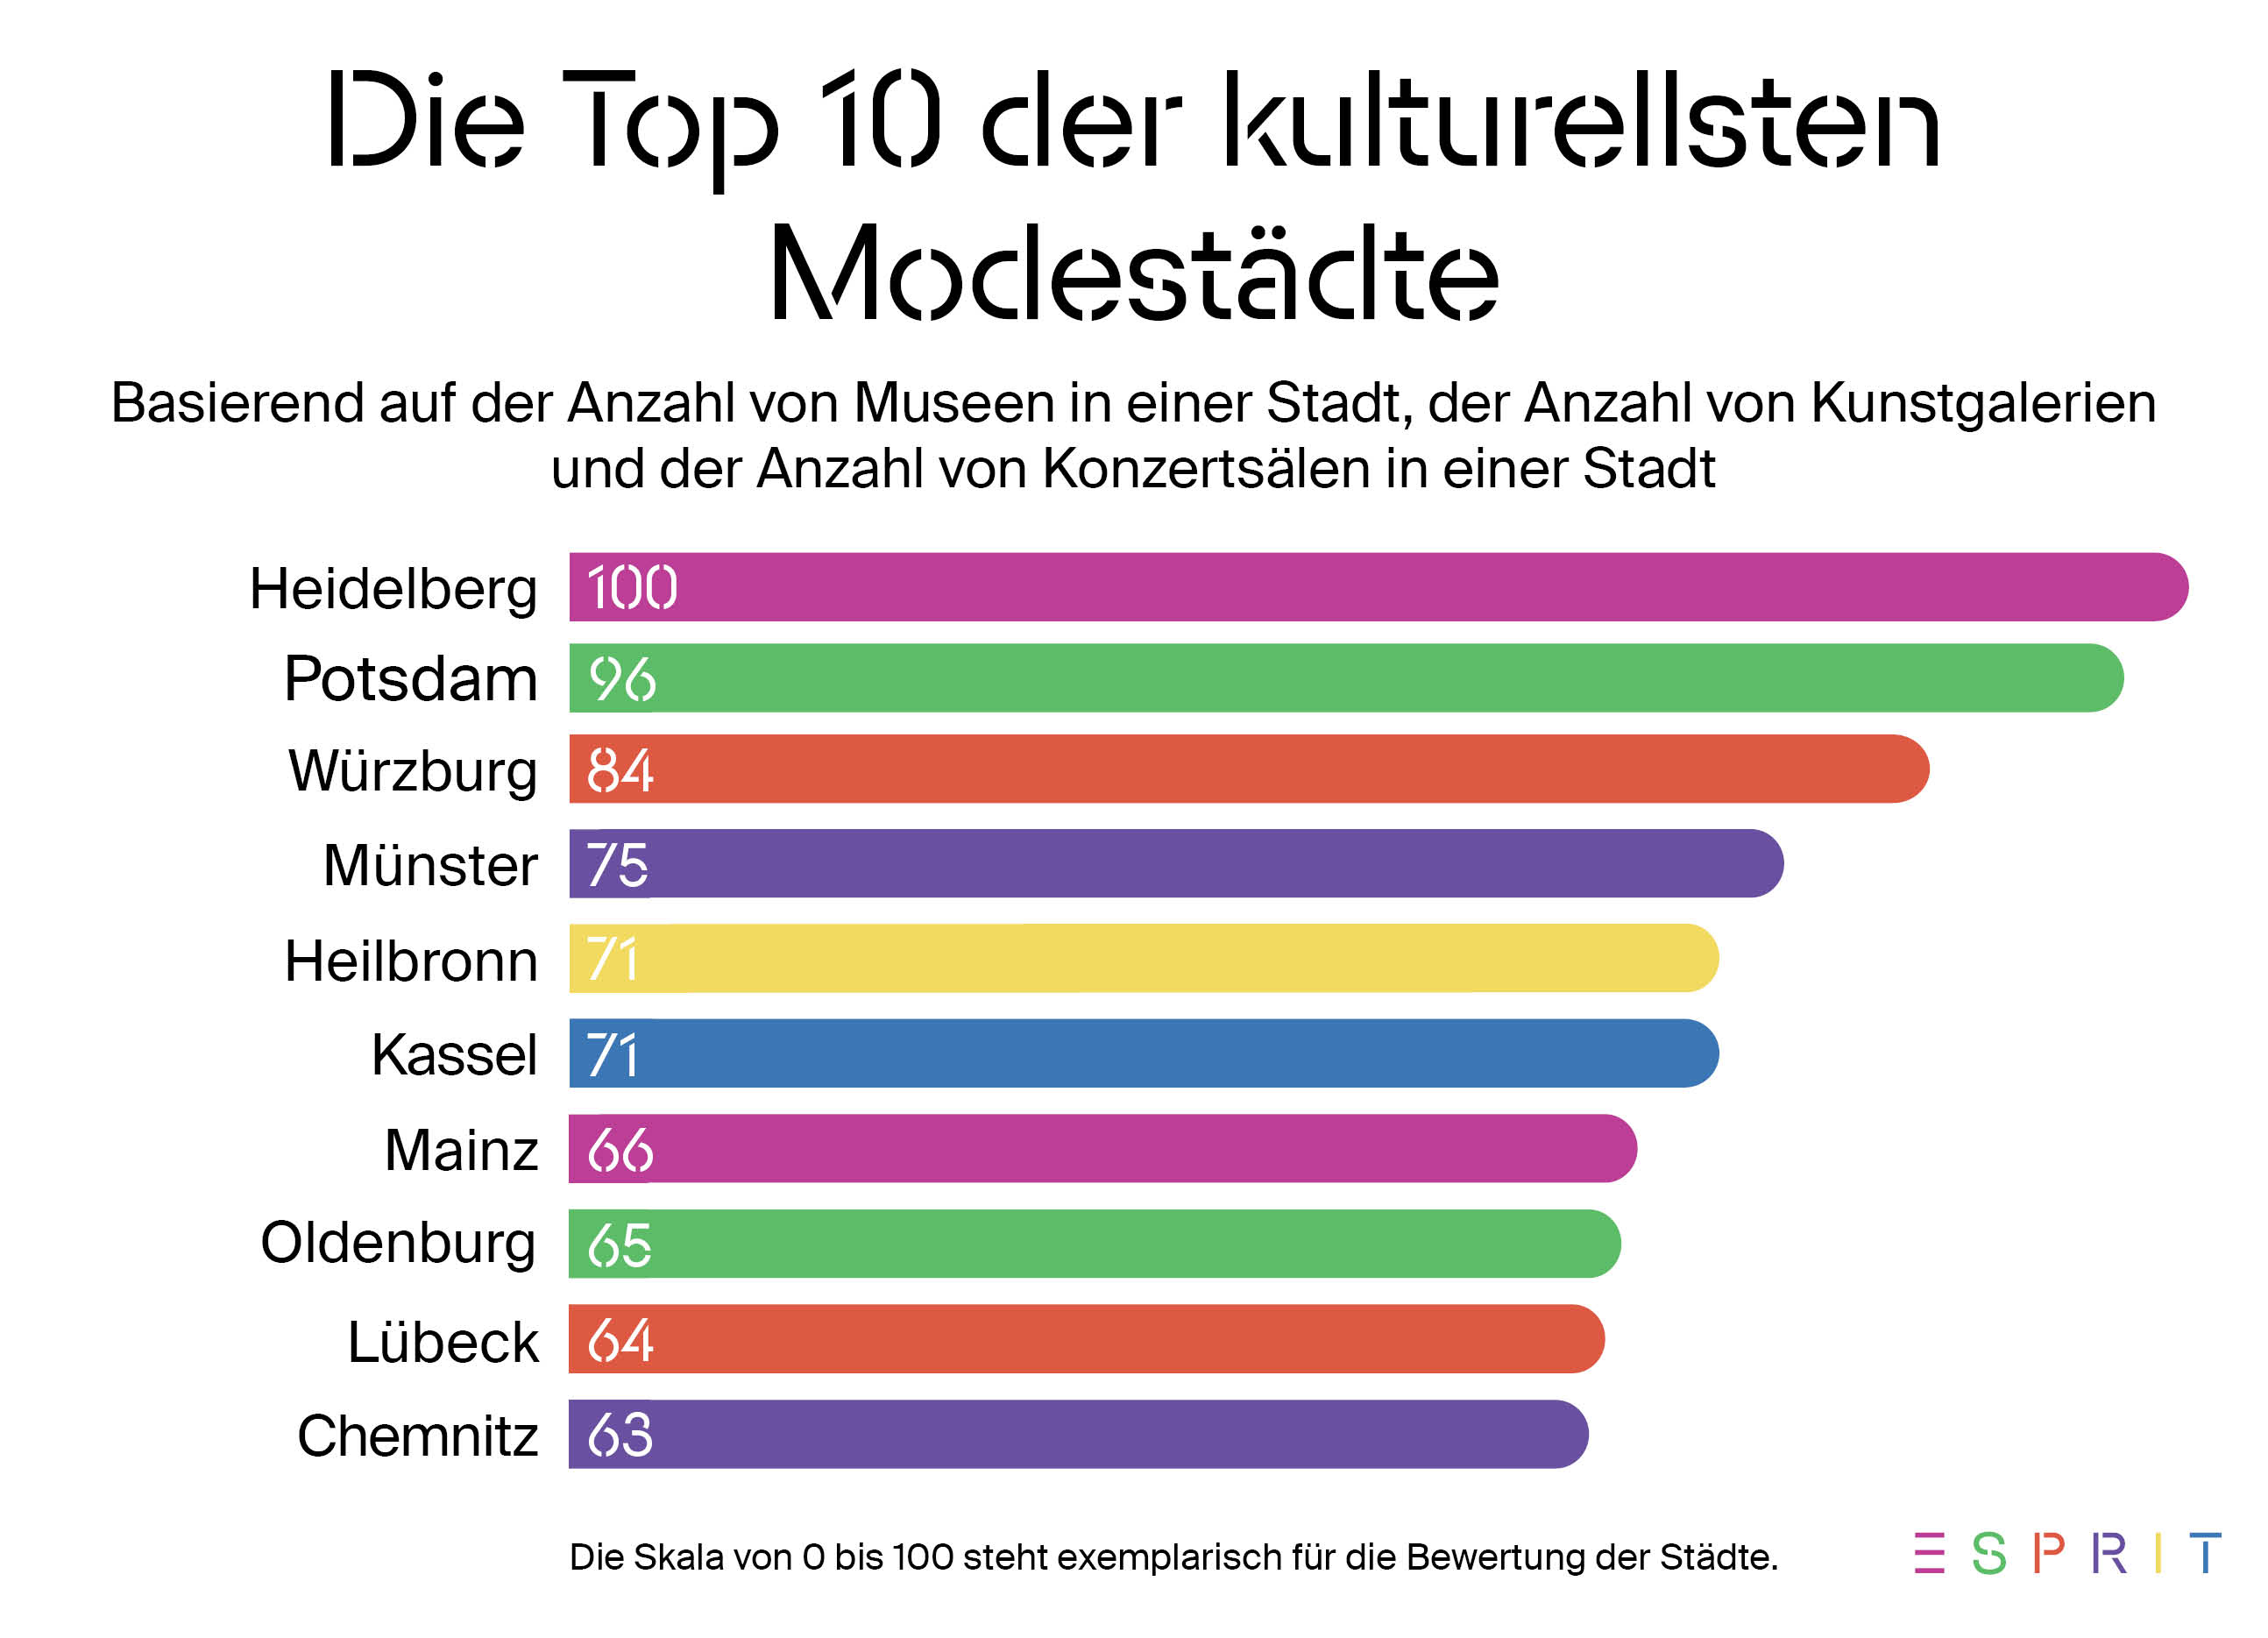 Heidelberg ist auf Platz 1 der Top-10 kulturellsten Modestädte in Deutschland.